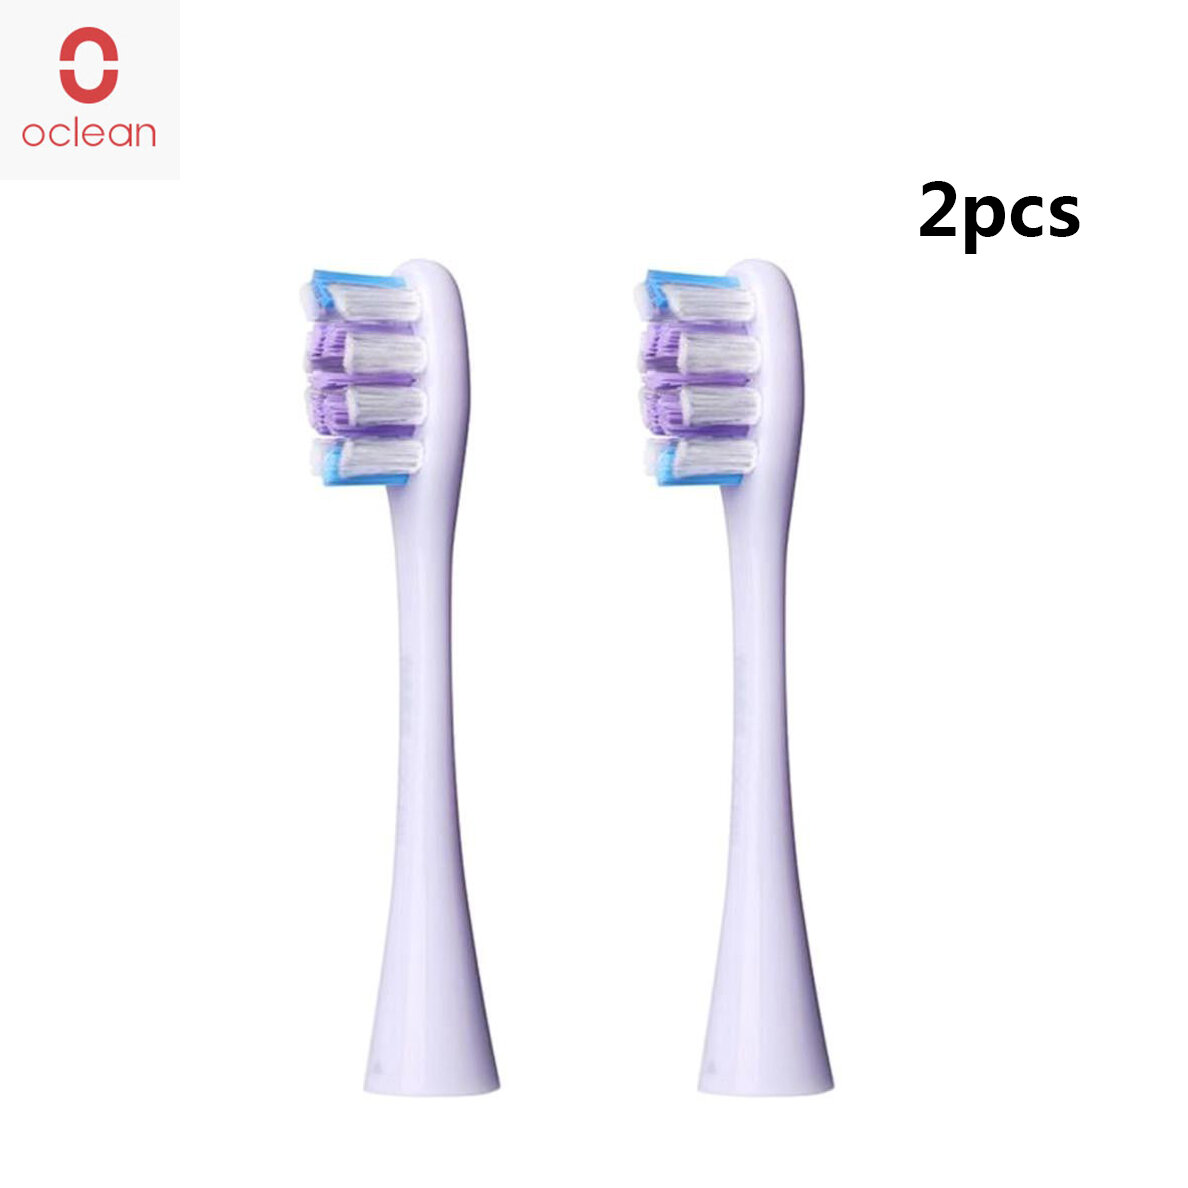 2PCS Oclean P2G vervangende opzetborstels geschikt voor alle Oclean tandenborstelmodellen - lichtpaa